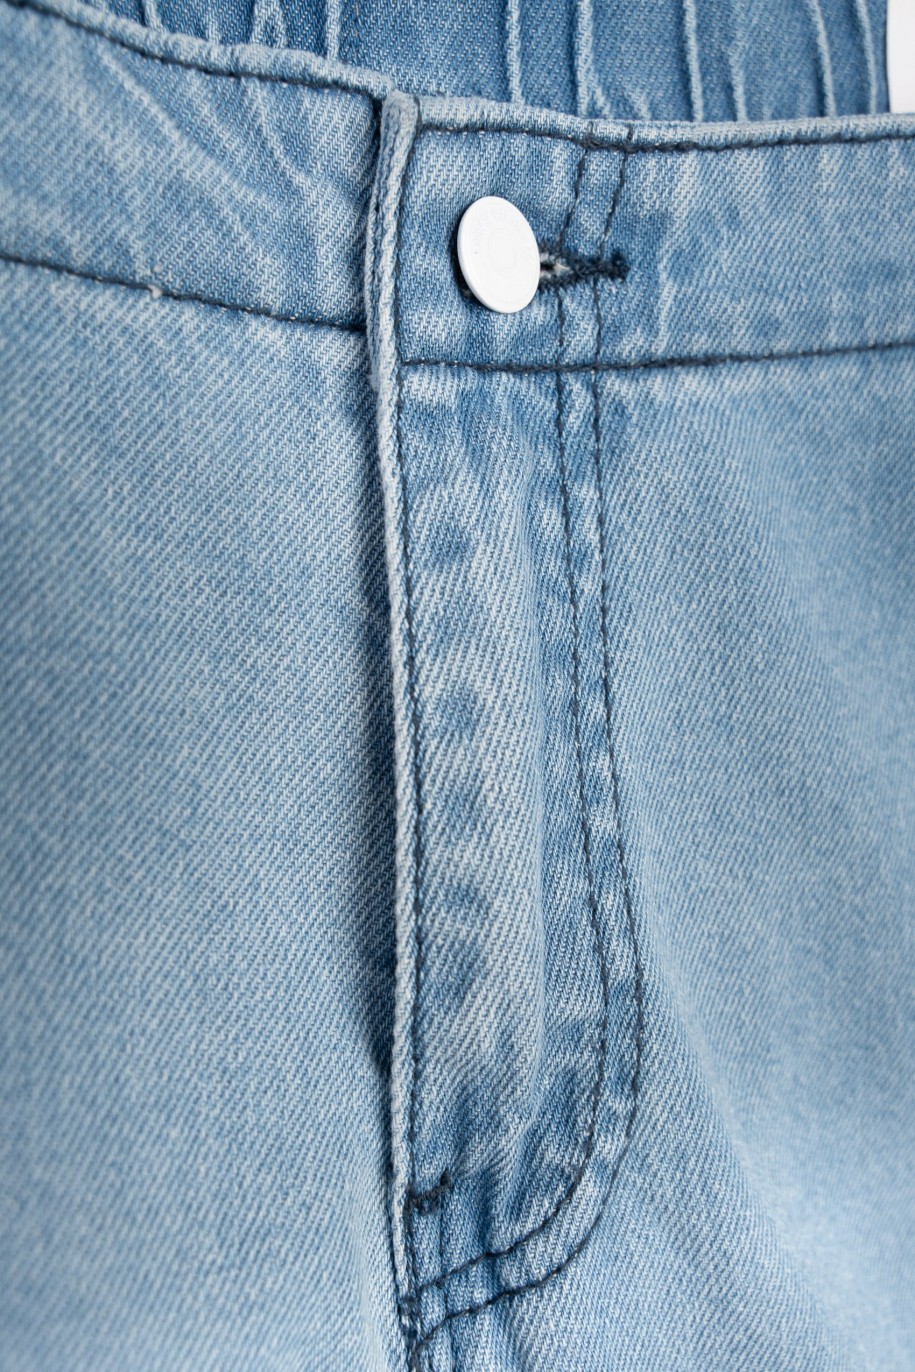 Niebieskie jeansowe spodnie typu cargo z przestrzennymi kieszeniami - 47567